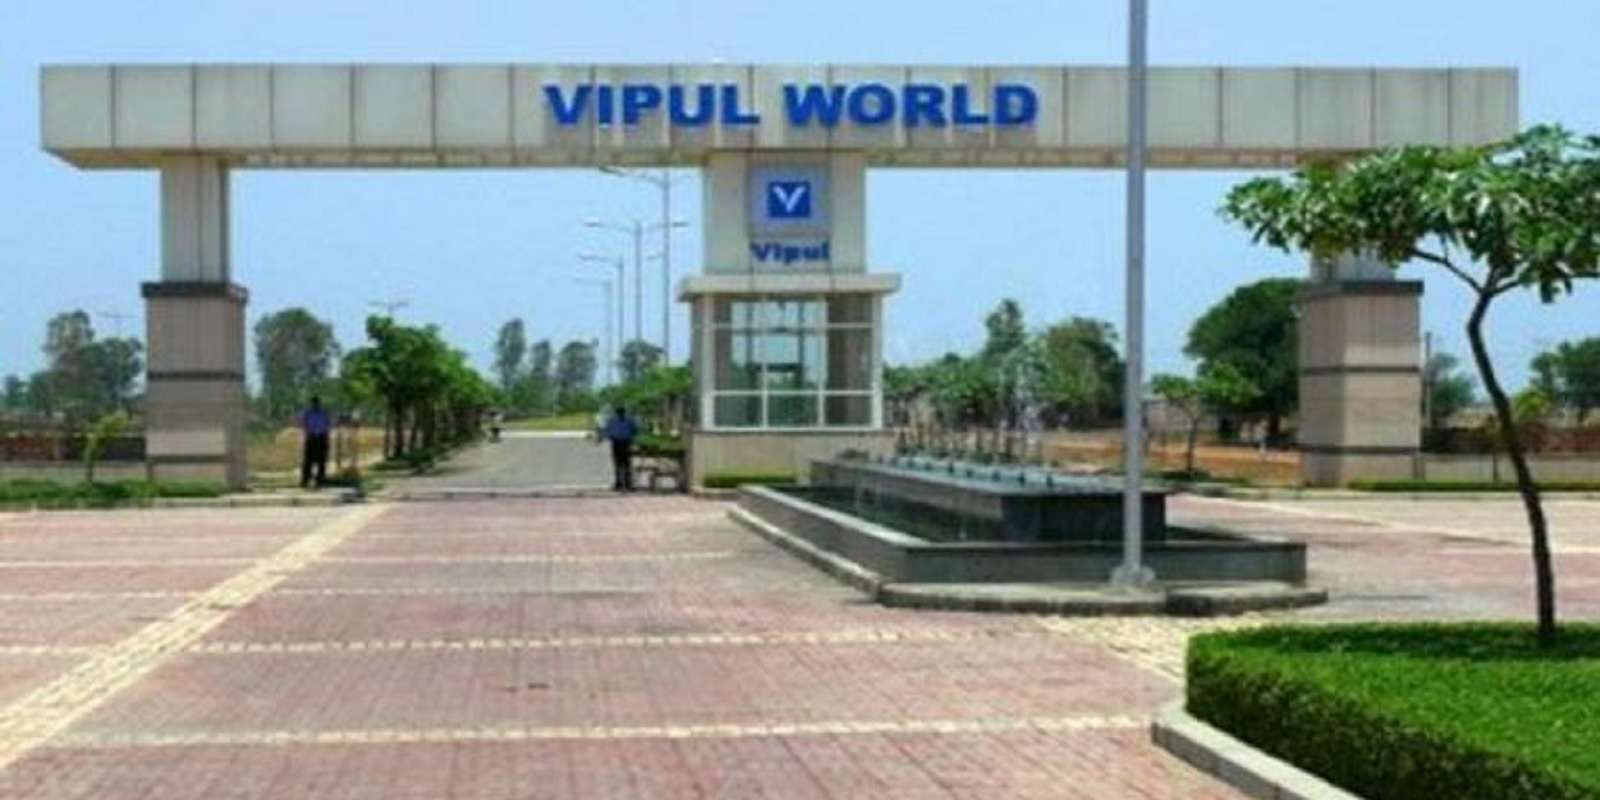 Vipul World Plots Cover Image